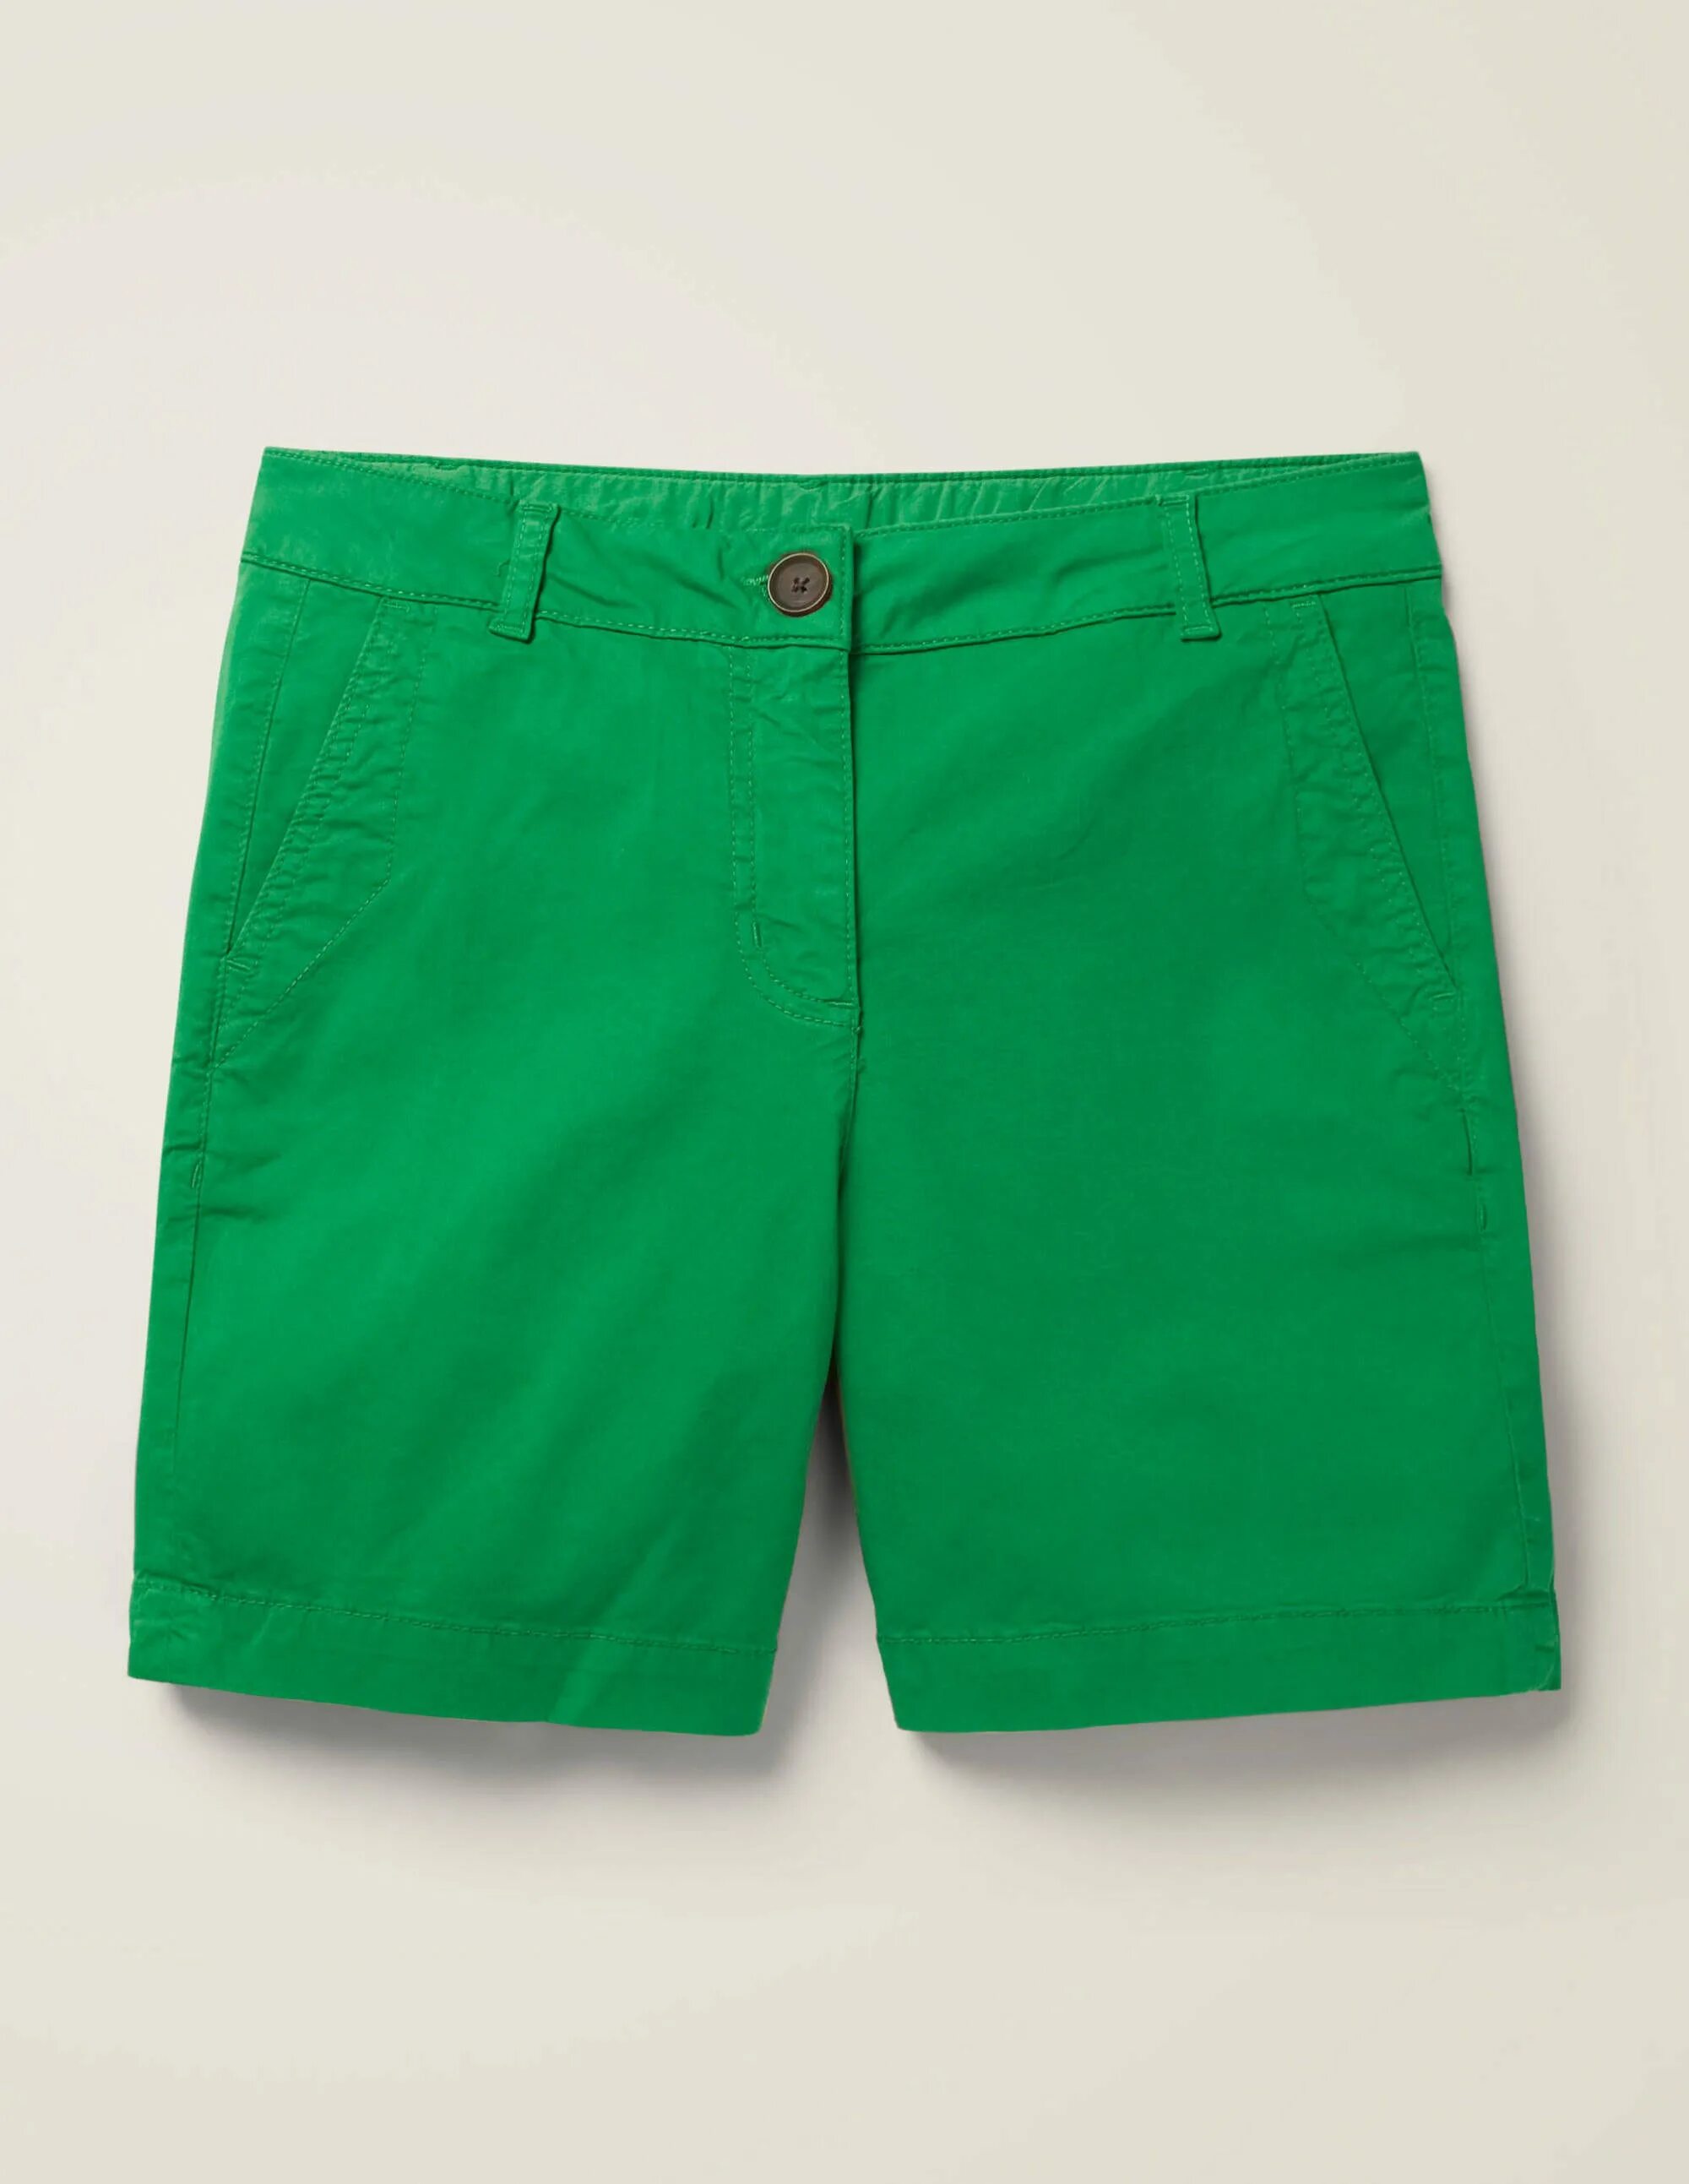 Monton зелёные шорты. Шорты Ричмонд hmp21119be. Зеленые шорты женские. Шорты зелёные удлиненные.